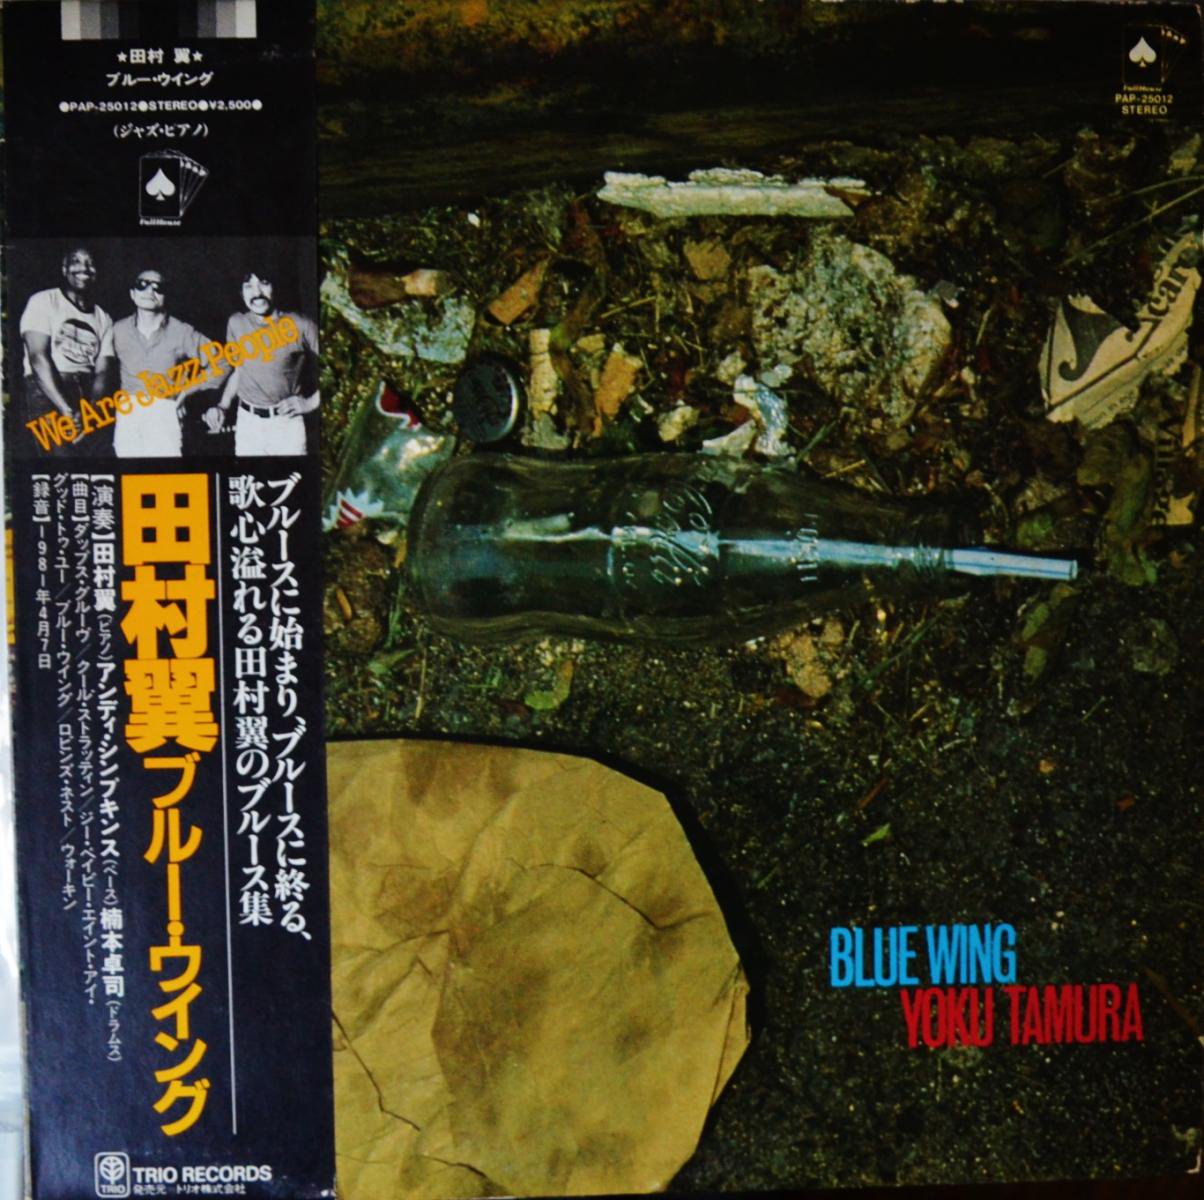 田村翼 YOKU TAMURA / ブルー・ウイング BLUE WING (LP)